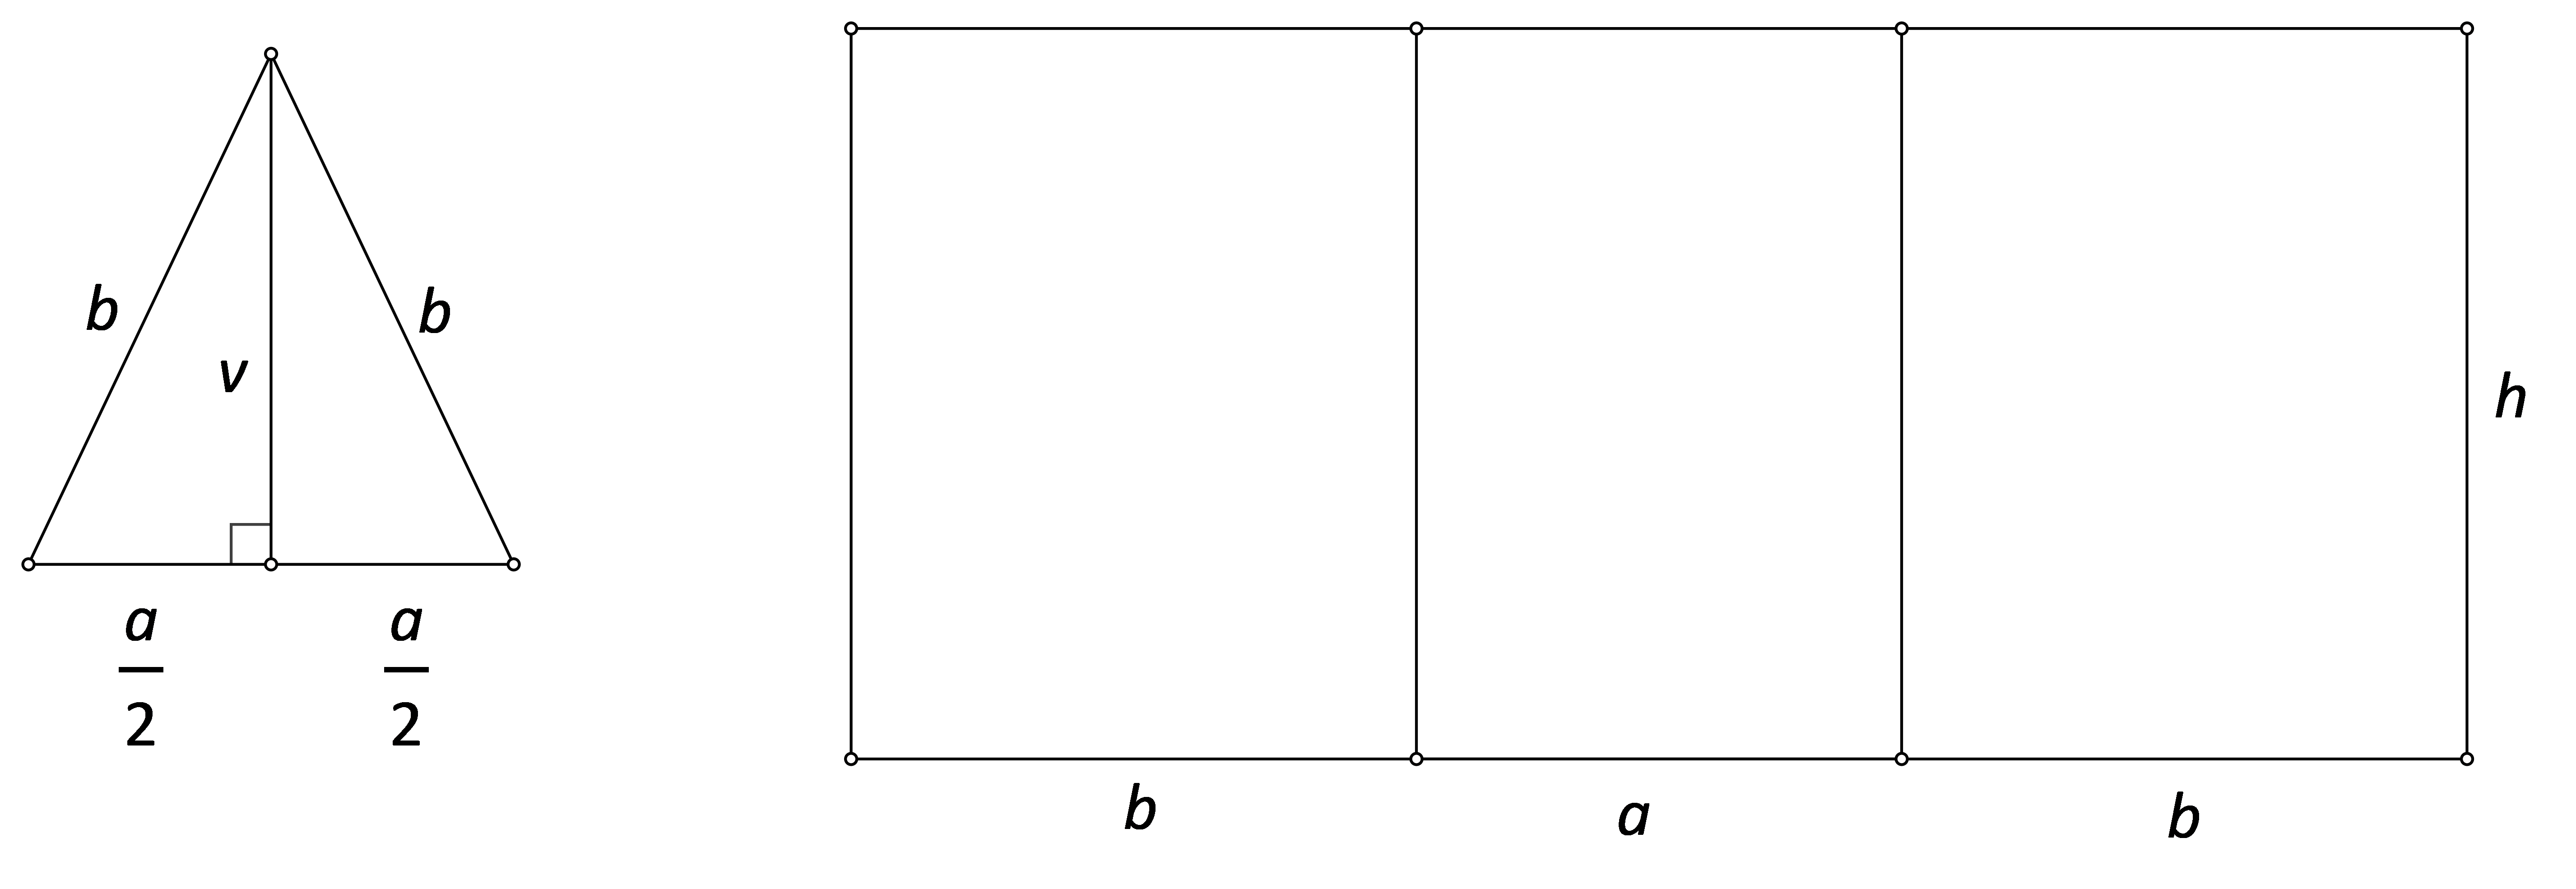 Slika prikazuje dijelove mreže prizme kojoj je baza jednakokračni trokut.